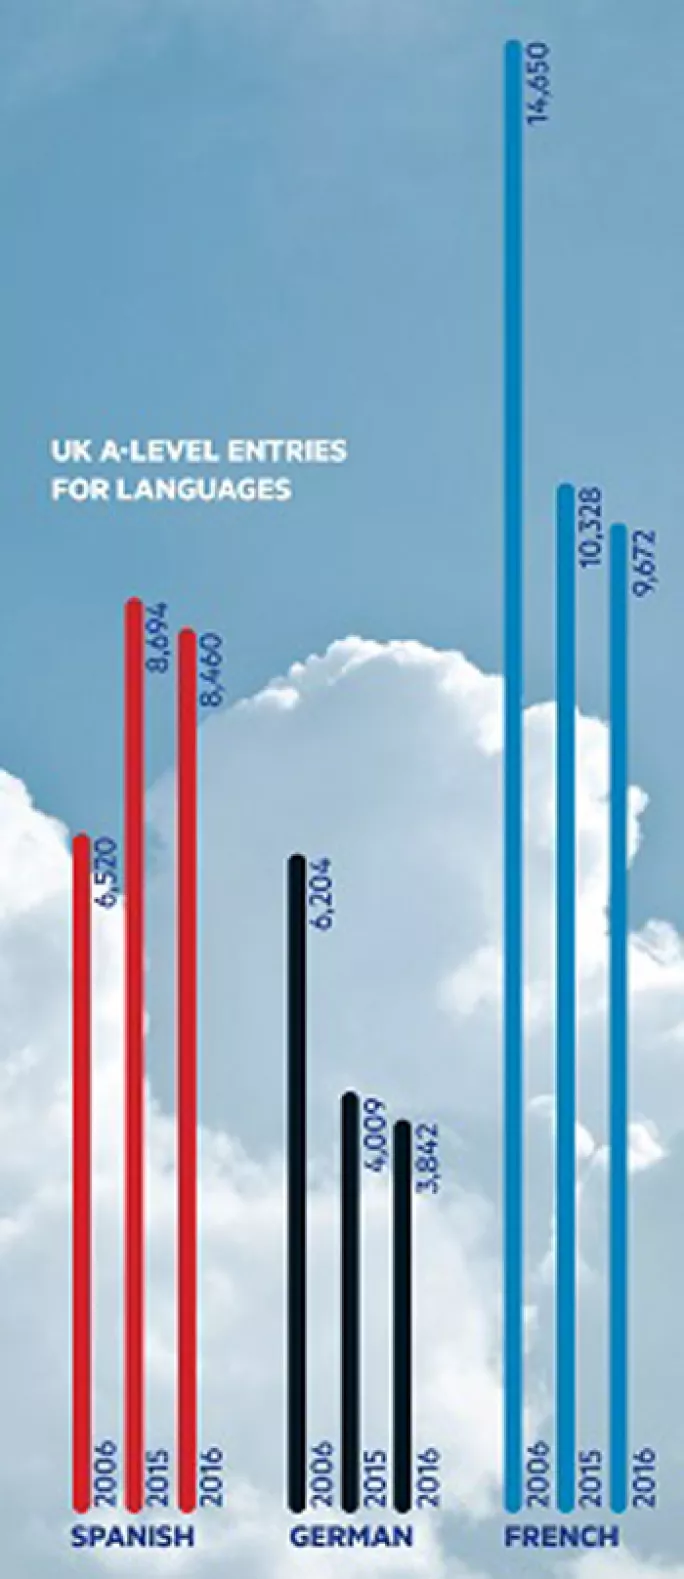 Languages A level entries